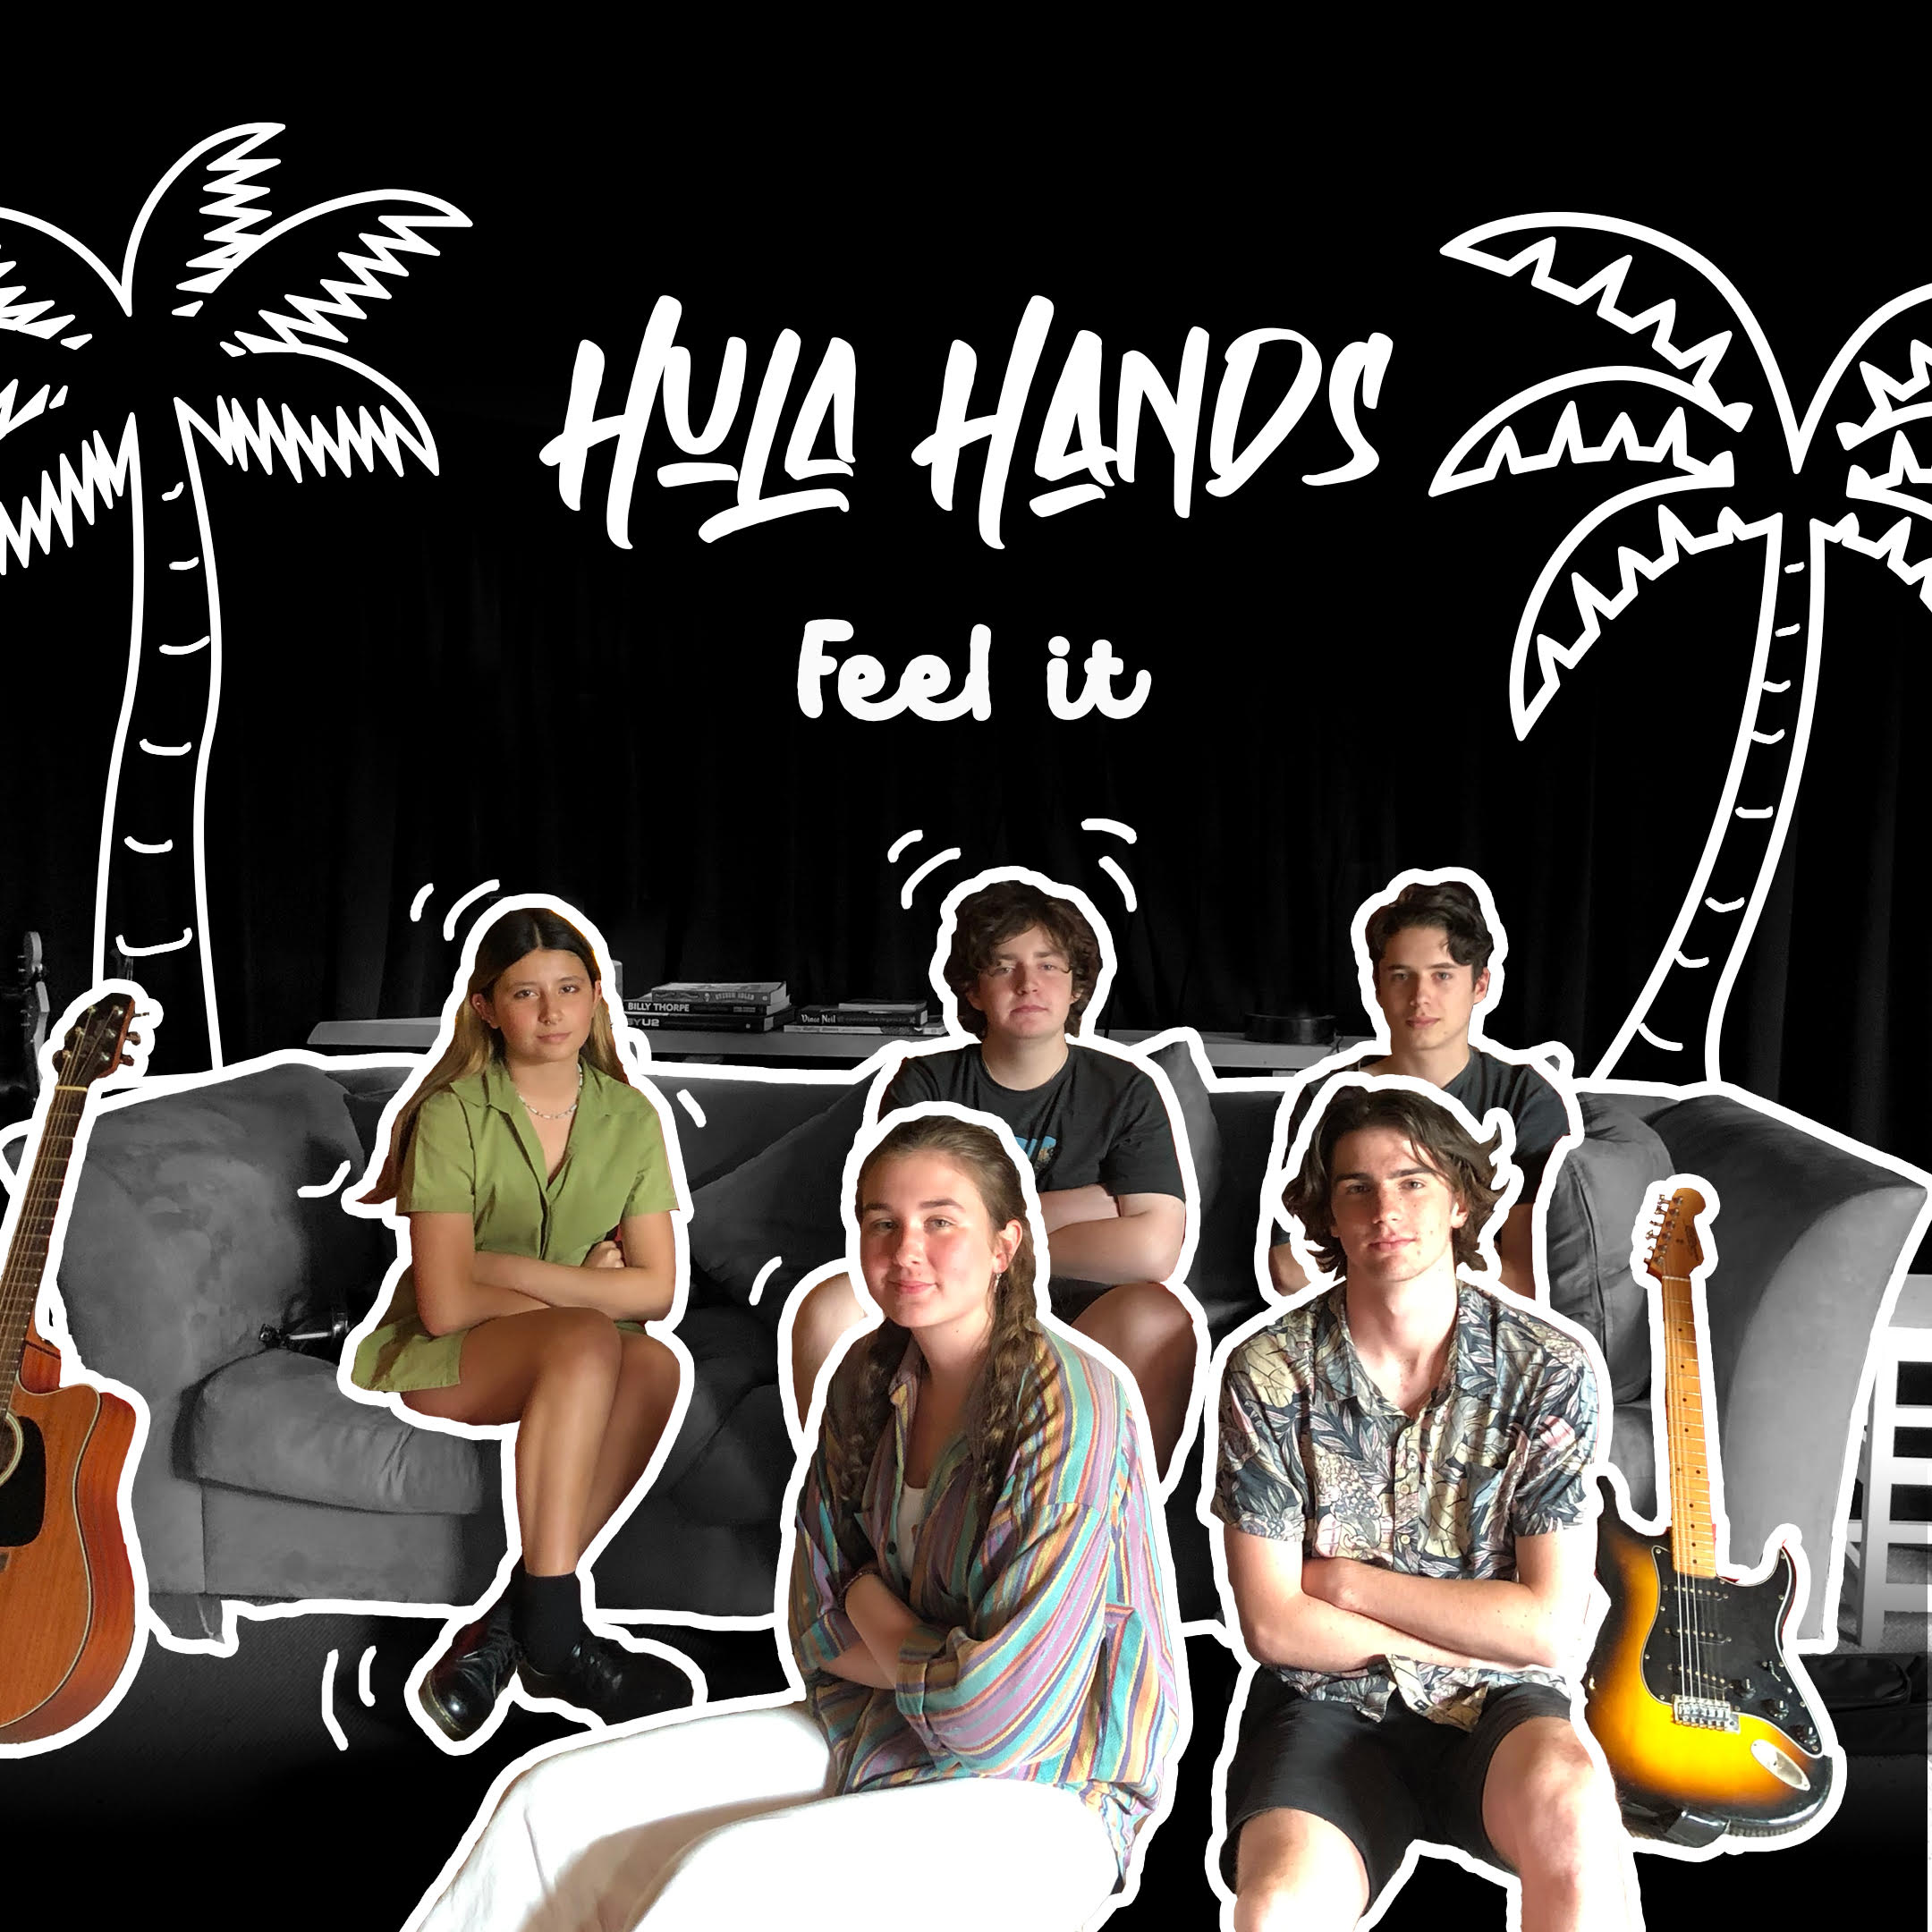 Hula hands album cover 2